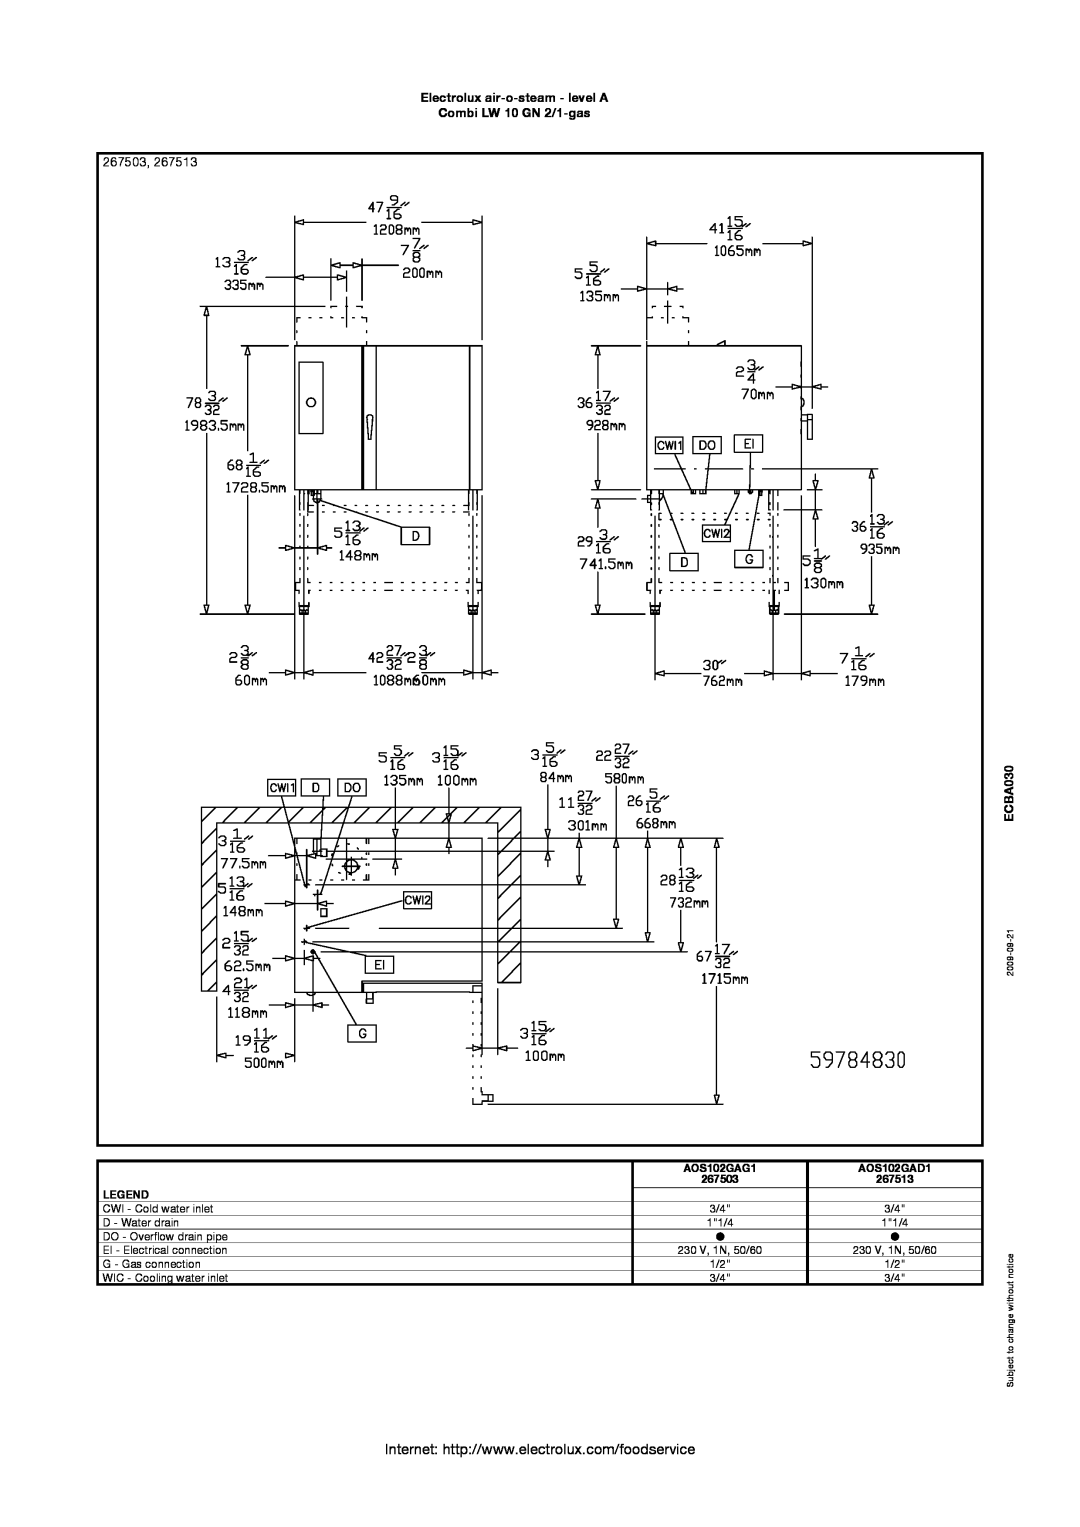 Electrolux AOS102GAG1 manual 267503, Electrolux air-o-steam - level A Combi LW 10 GN 2/1-gas, ECBA030, AOS102GAD1, 267513 